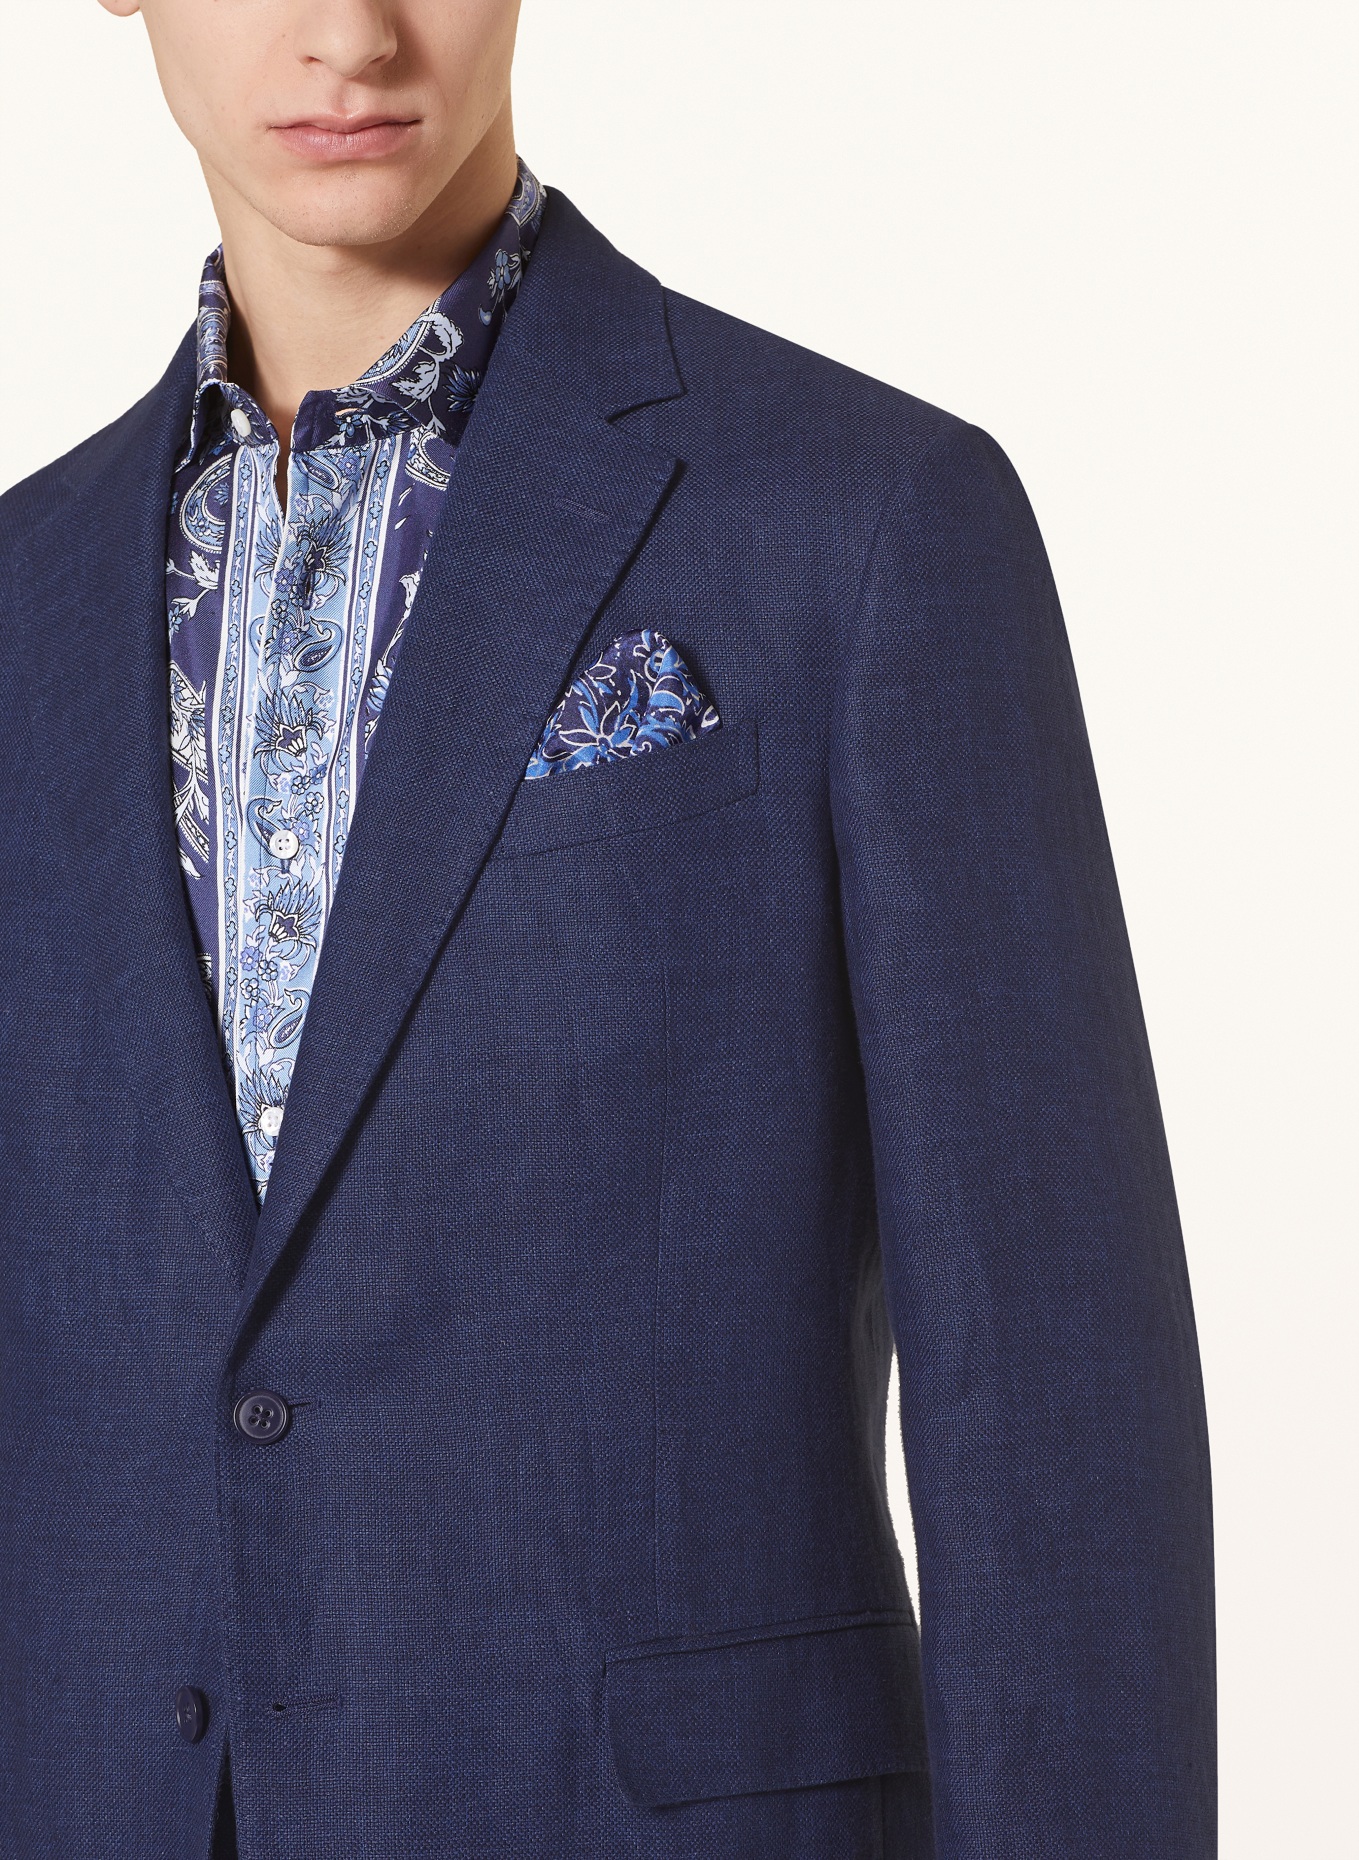 RALPH LAUREN PURPLE LABEL Suit jacket extra slim fit in linen, Color: DARK BLUE (Image 5)